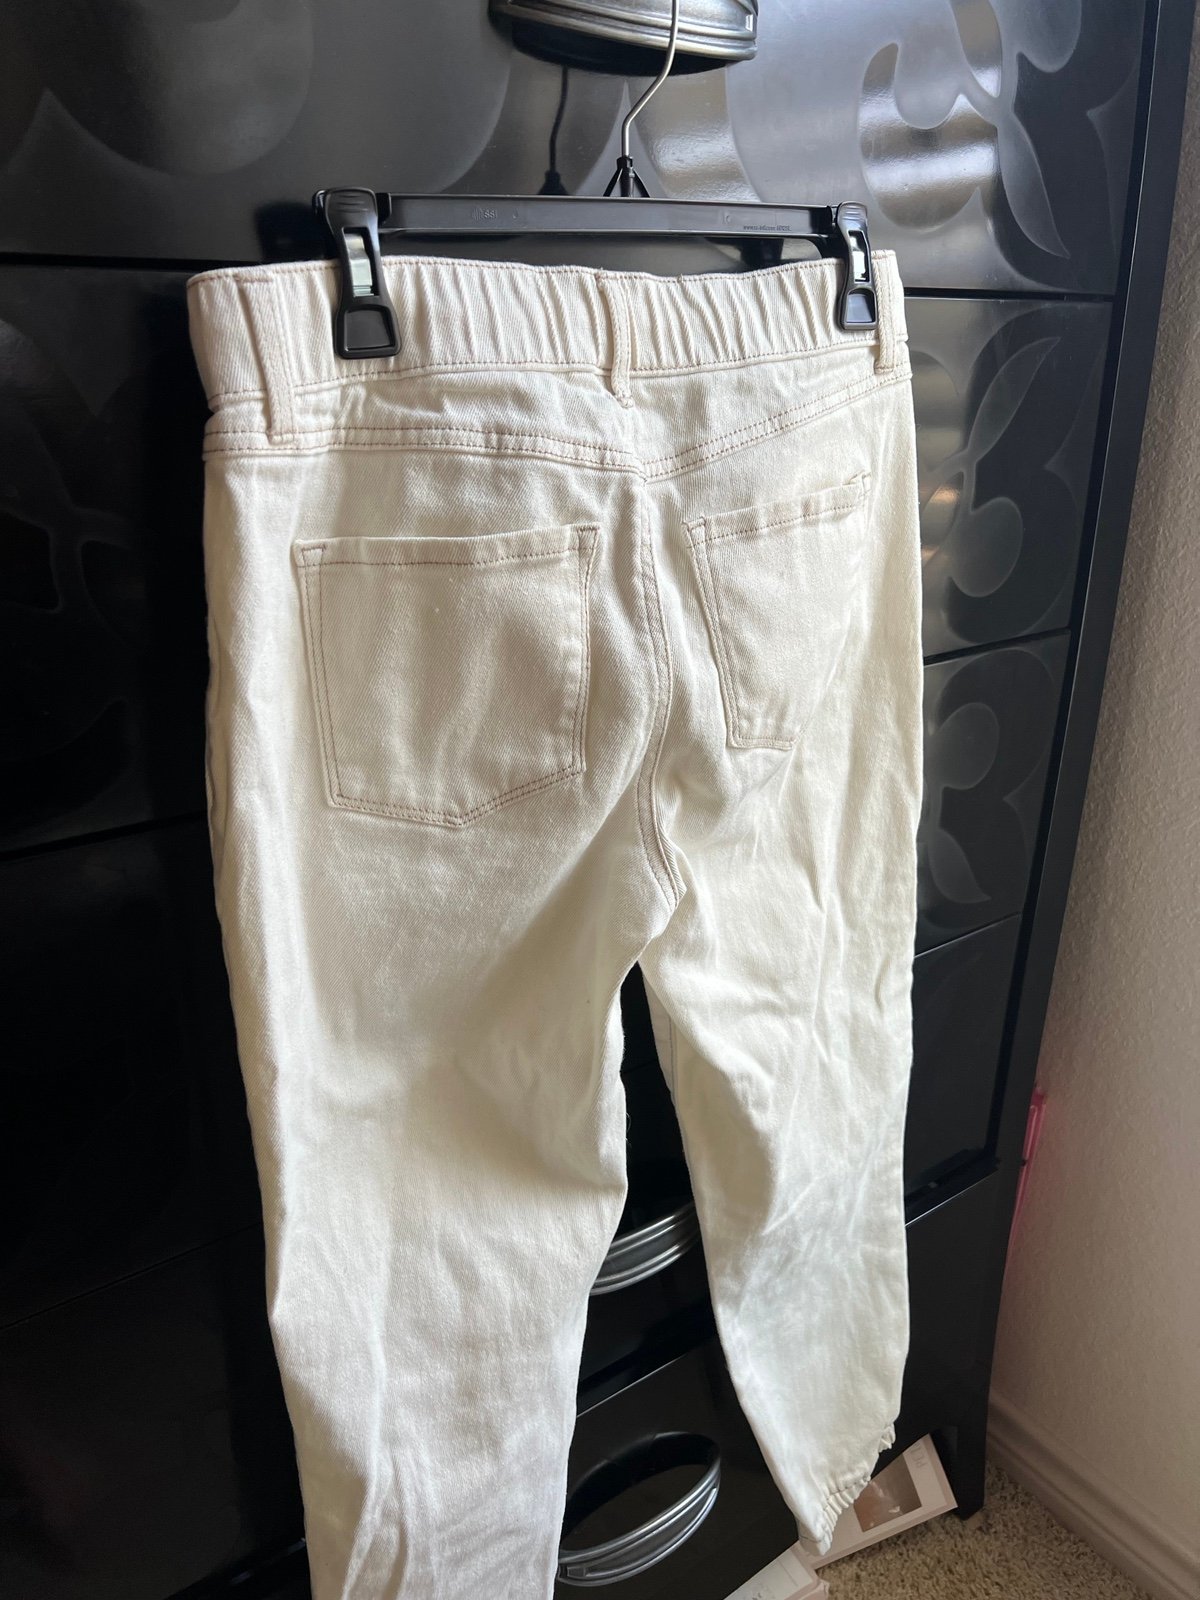 Cheap rewash pants jP50vjfUz Cool